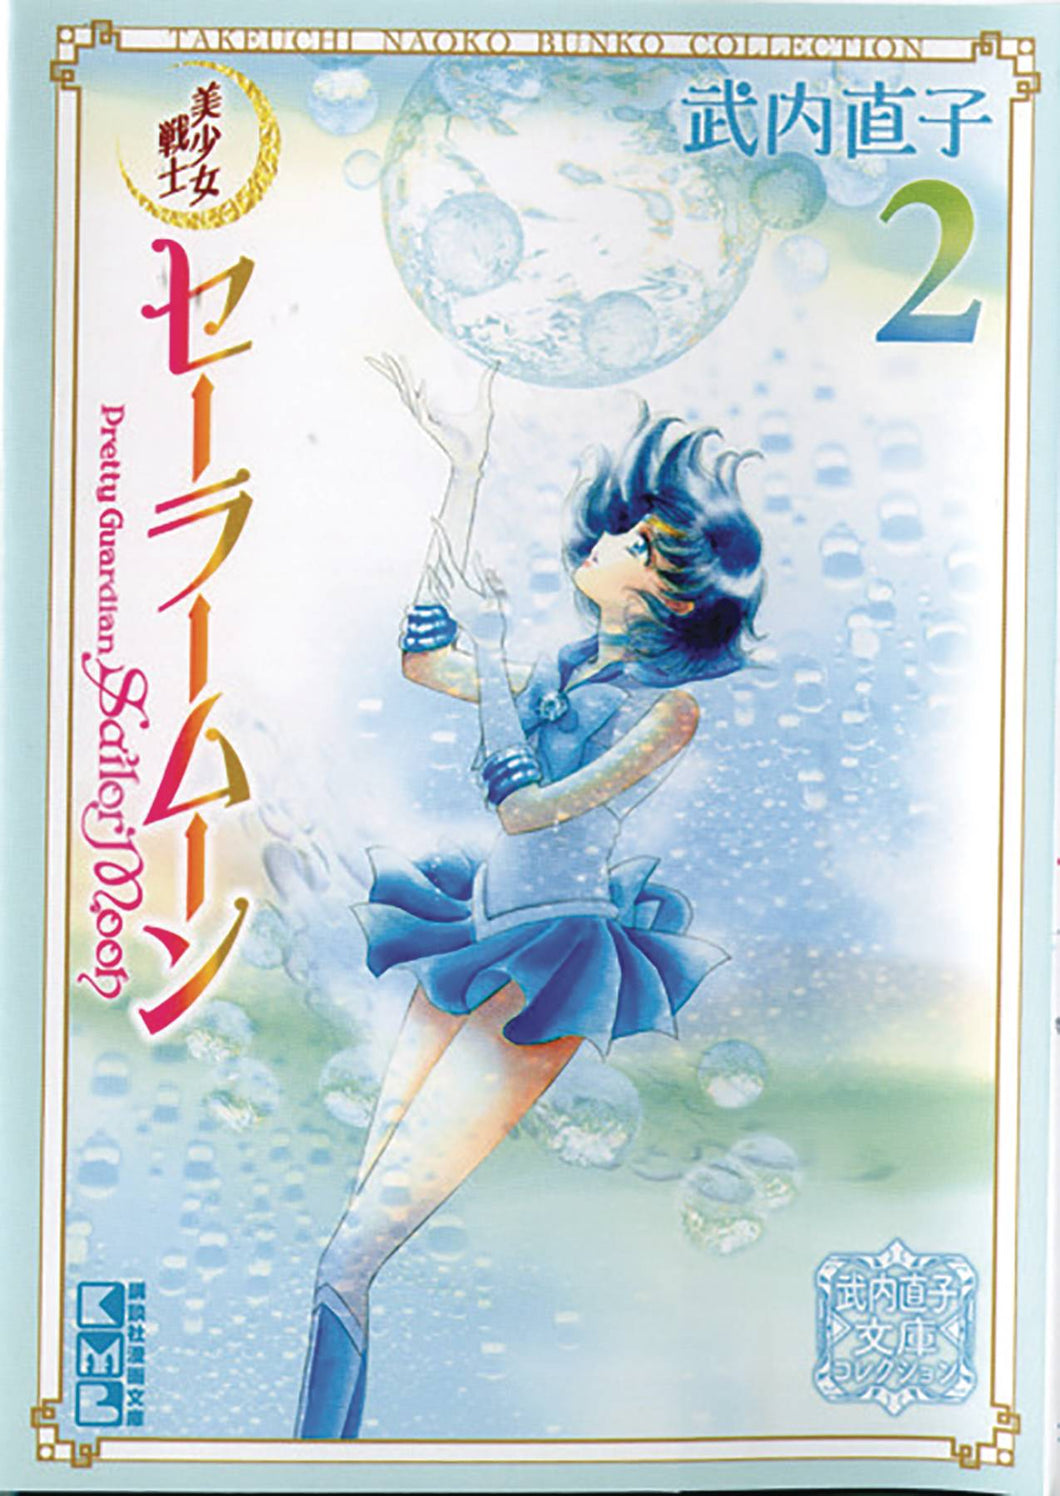 Sailor Moon Naoko Takeuchi Collection GN Vol 02 - Books